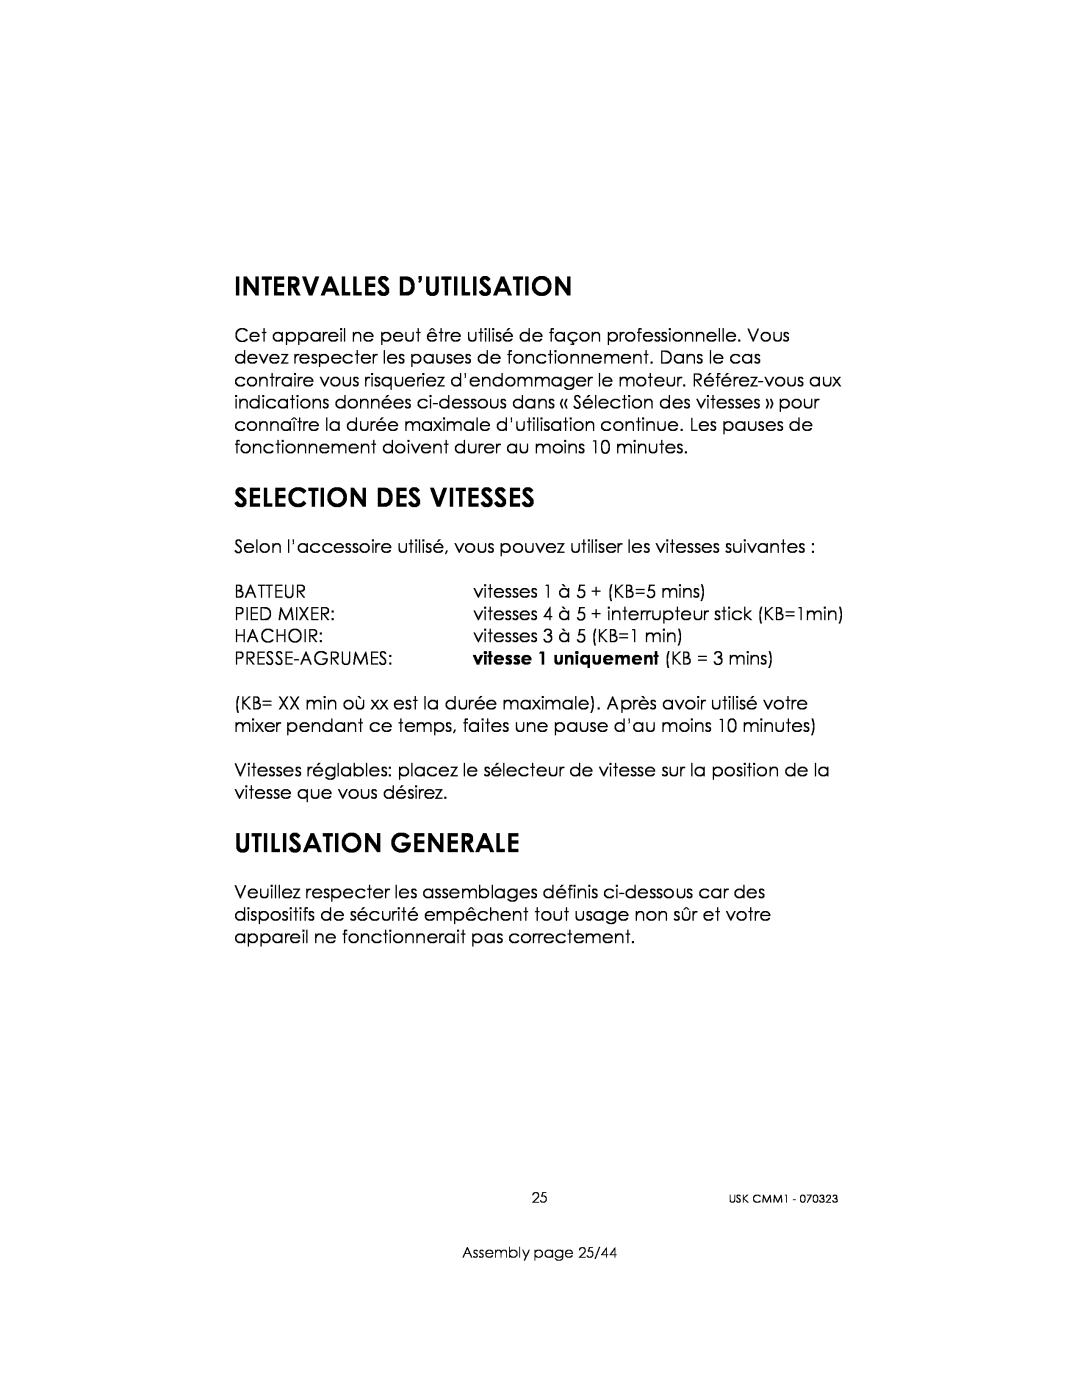 Kalorik USK CMM 1 manual Intervalles D’Utilisation, Selection Des Vitesses, Utilisation Generale, Assembly page 25/44 